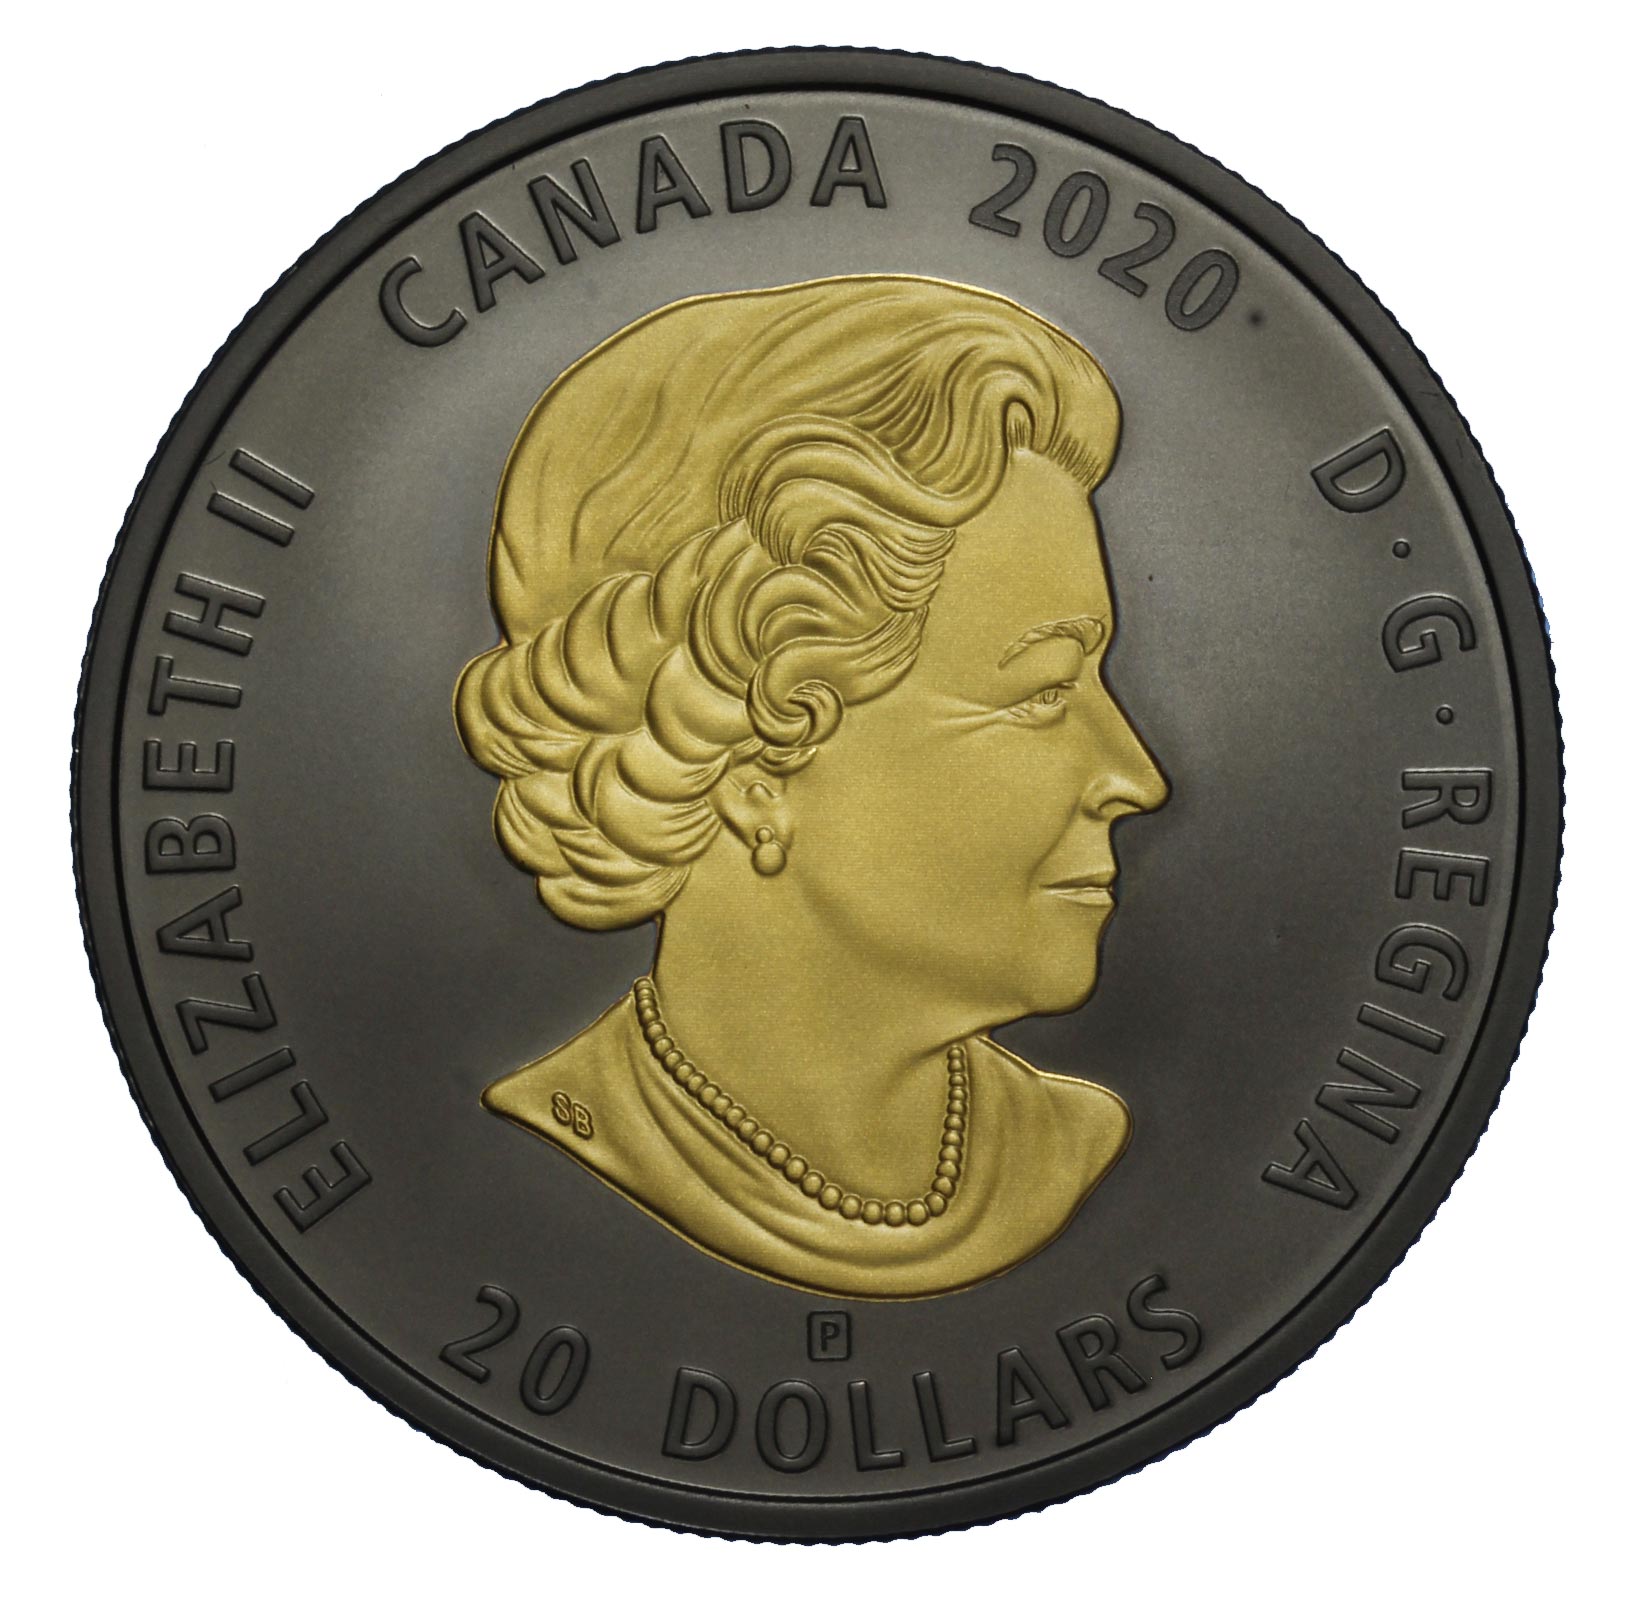 17521_531_2-Canada-2020-cavallo-20-dolli placcatura oro e rodio.jpg